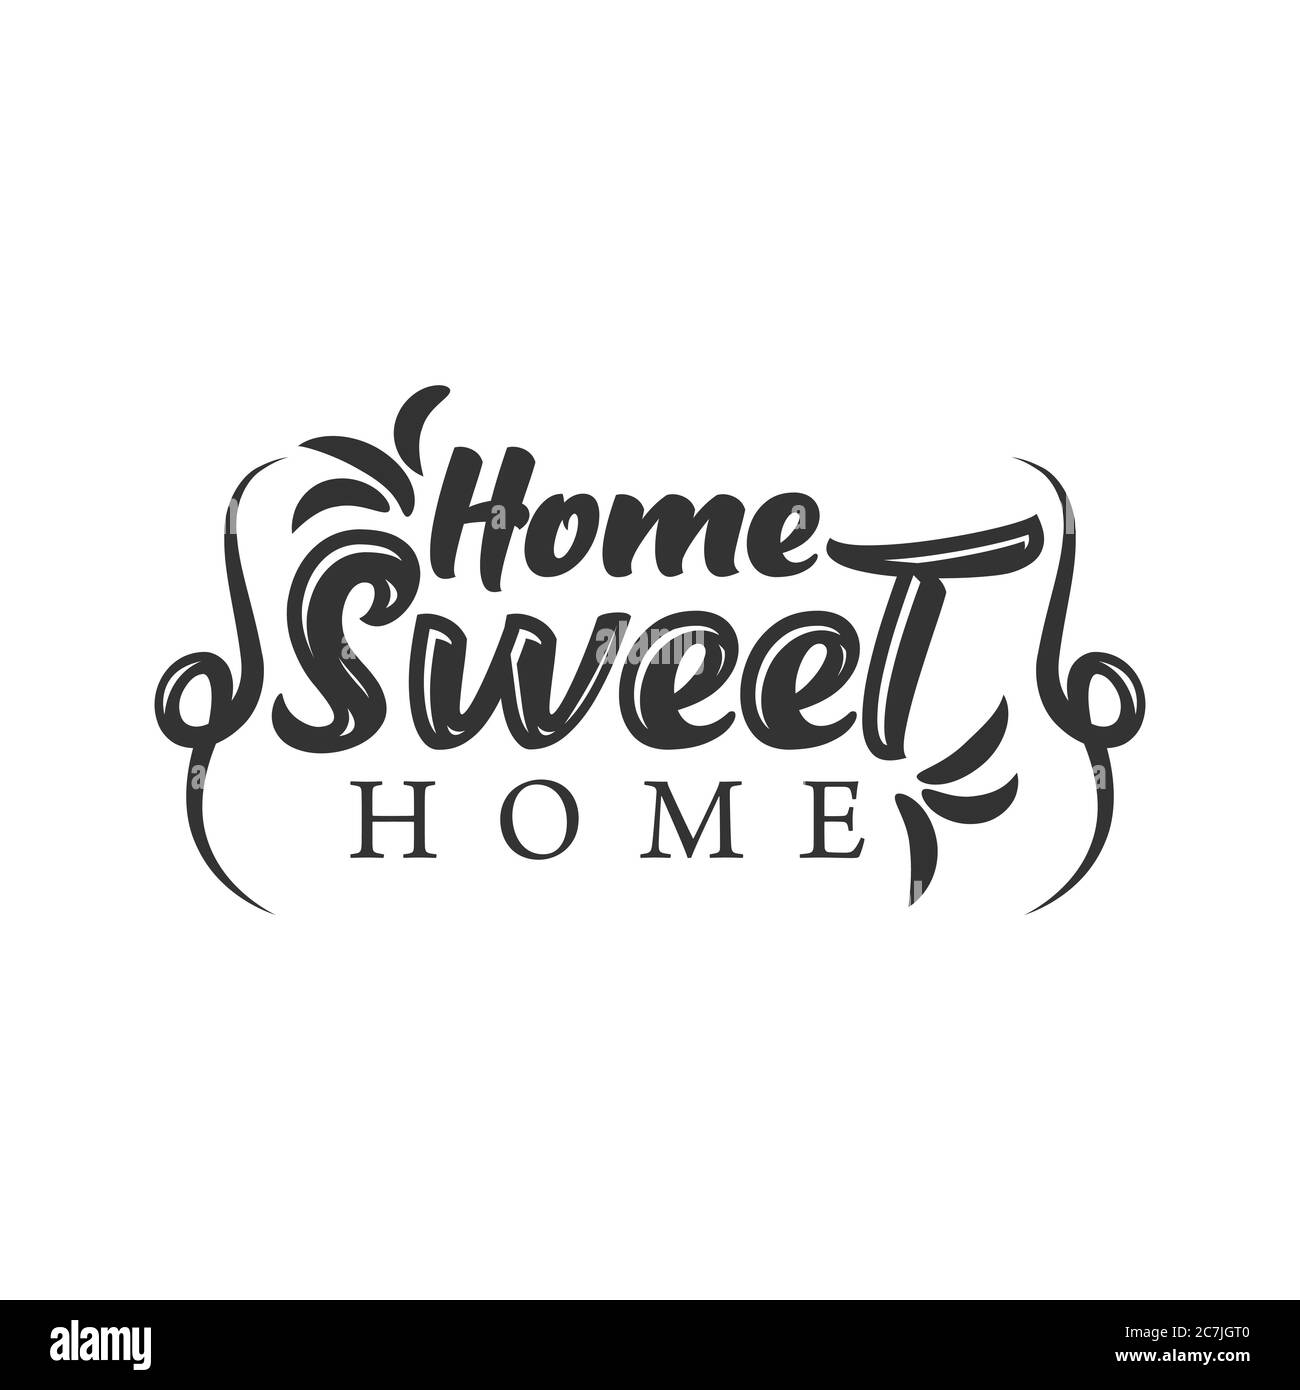 Home Sweet Home - Poster Di Tipografia. Stampa scritta a mano. Immagine vettoriale vintage con cappa casa e cuore bello e camino incenso. Illustrazione Vettoriale